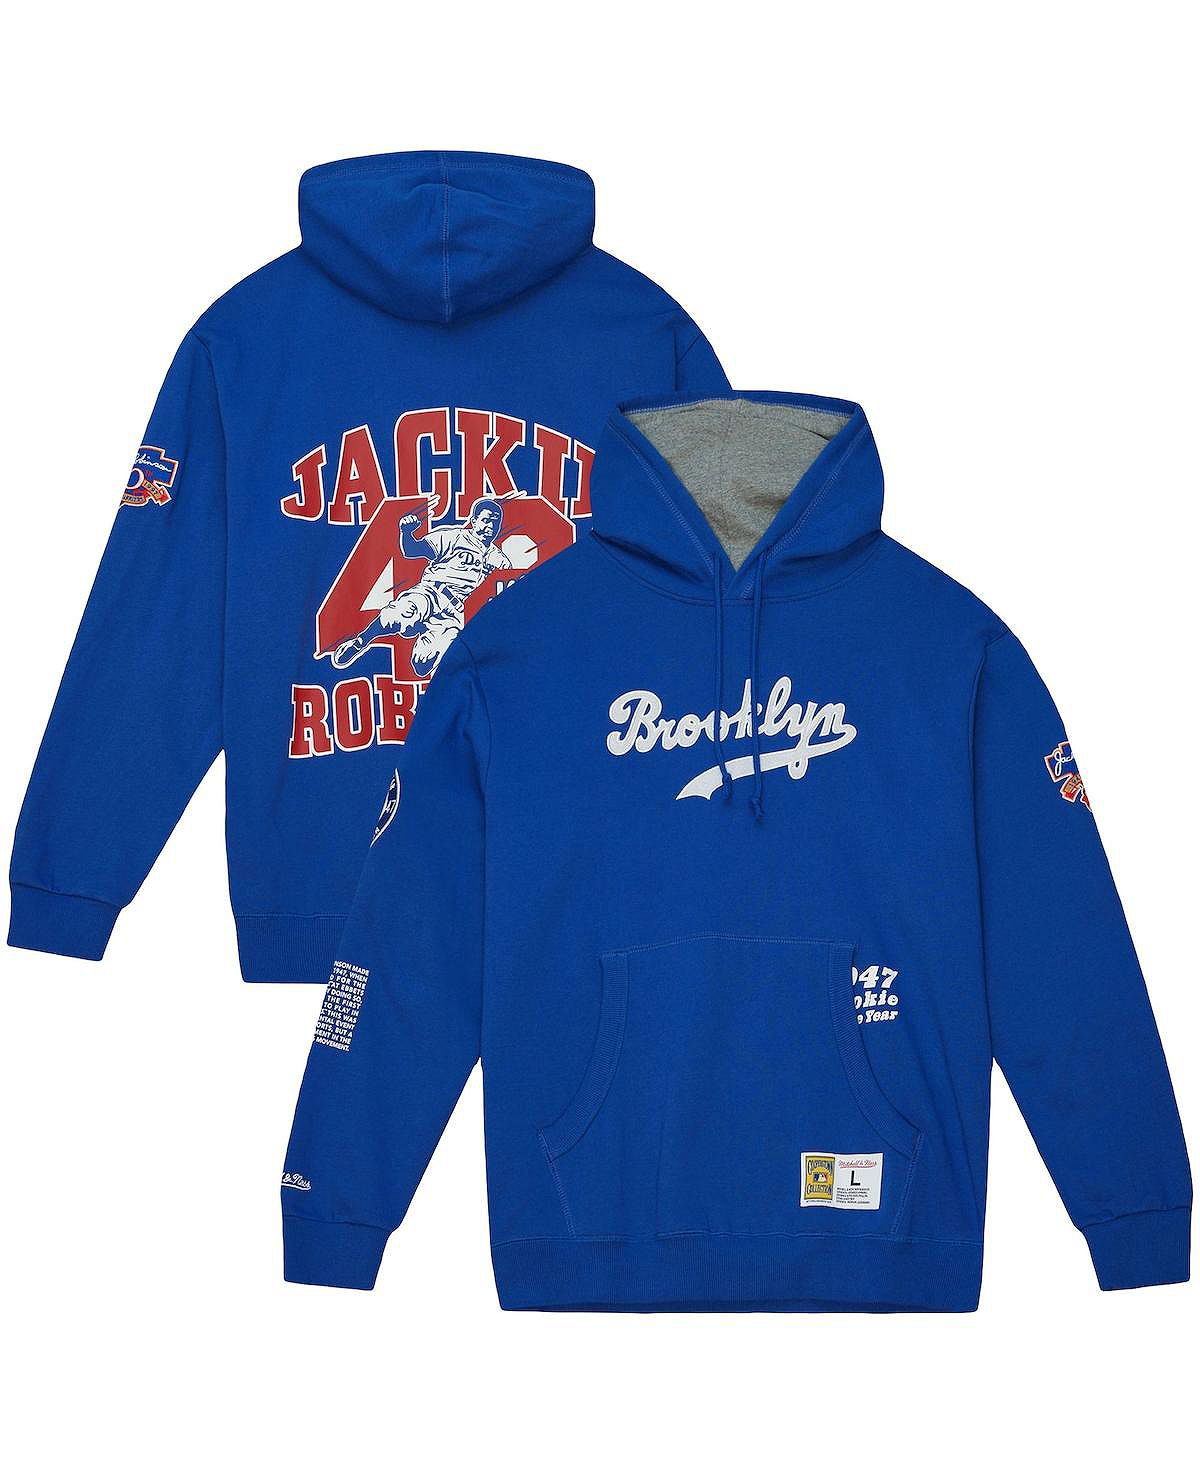 Мужской флисовый пуловер с капюшоном Jackie Robinson Royal Brooklyn Dodgers Cooperstown Collection Legends Mitchell & Ness эшенден джеки навсегда осталась твоей